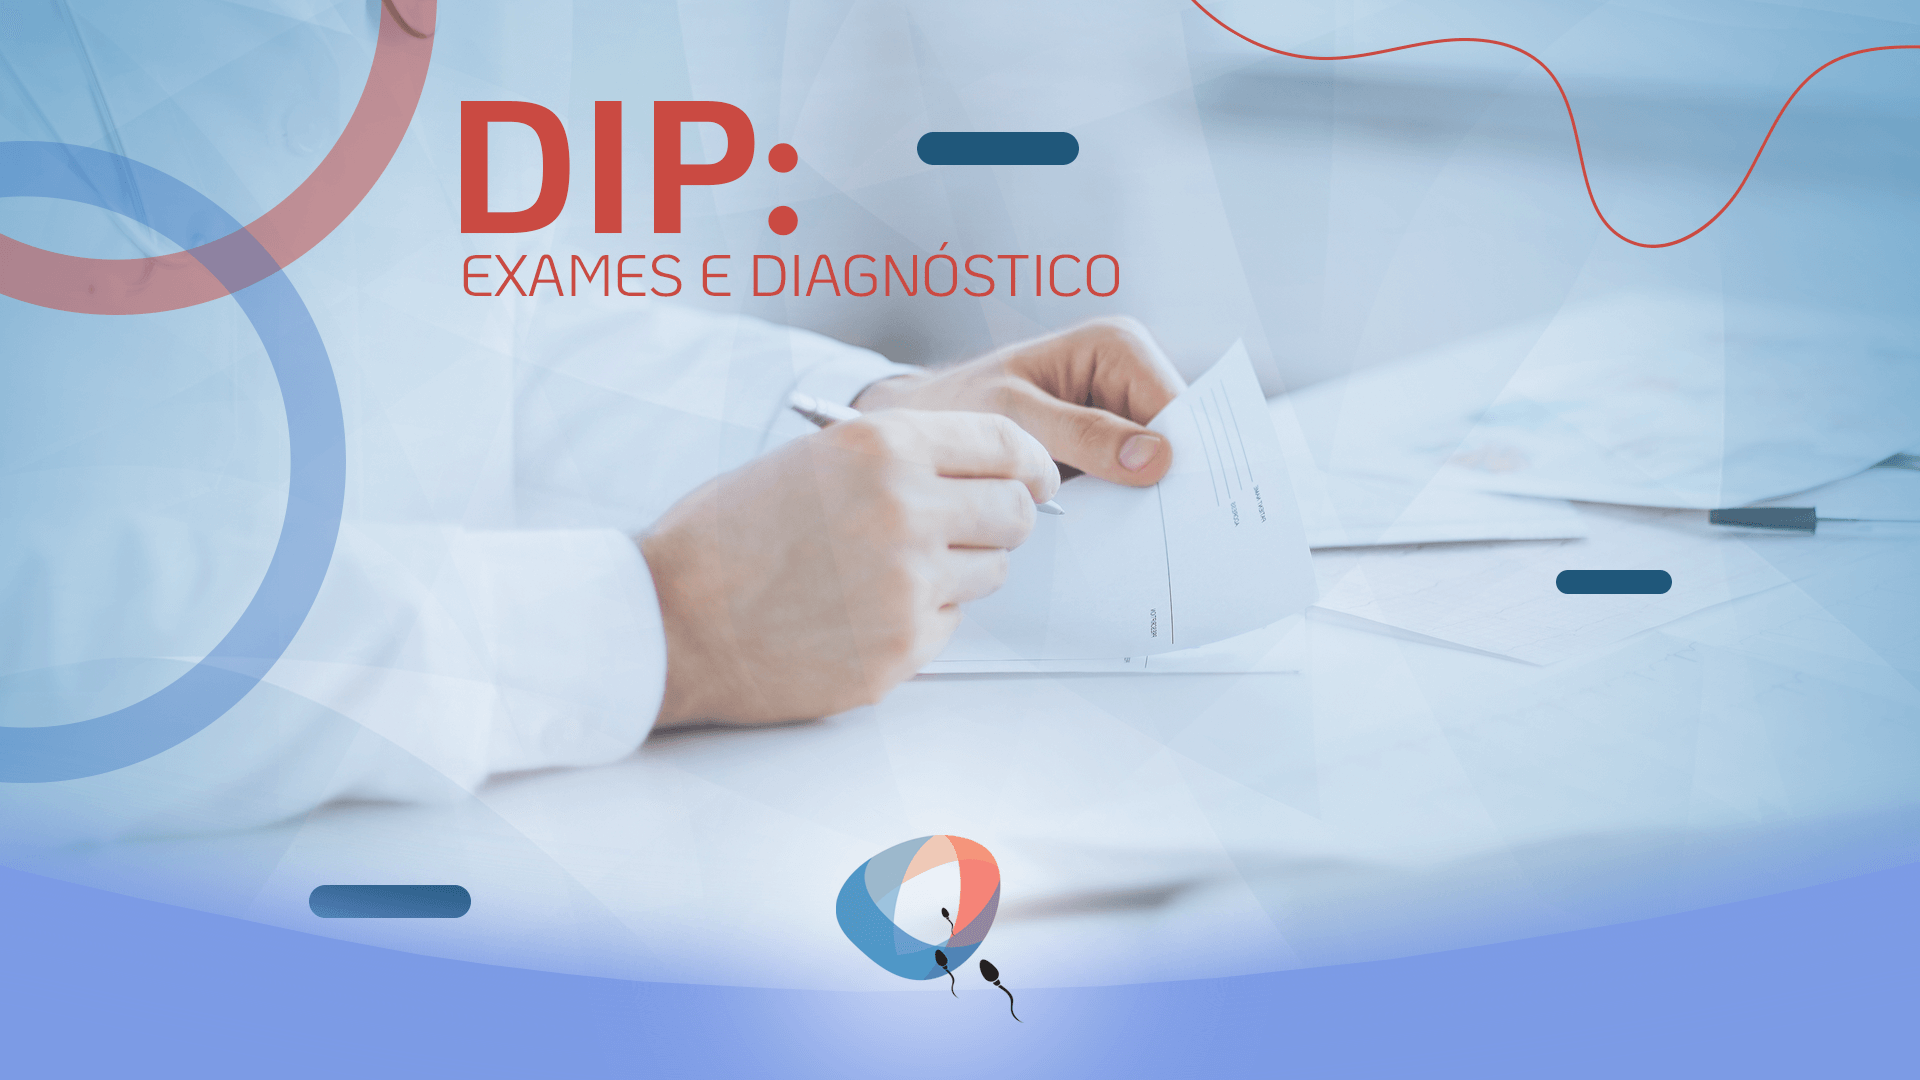 DIP: exames e diagnóstico